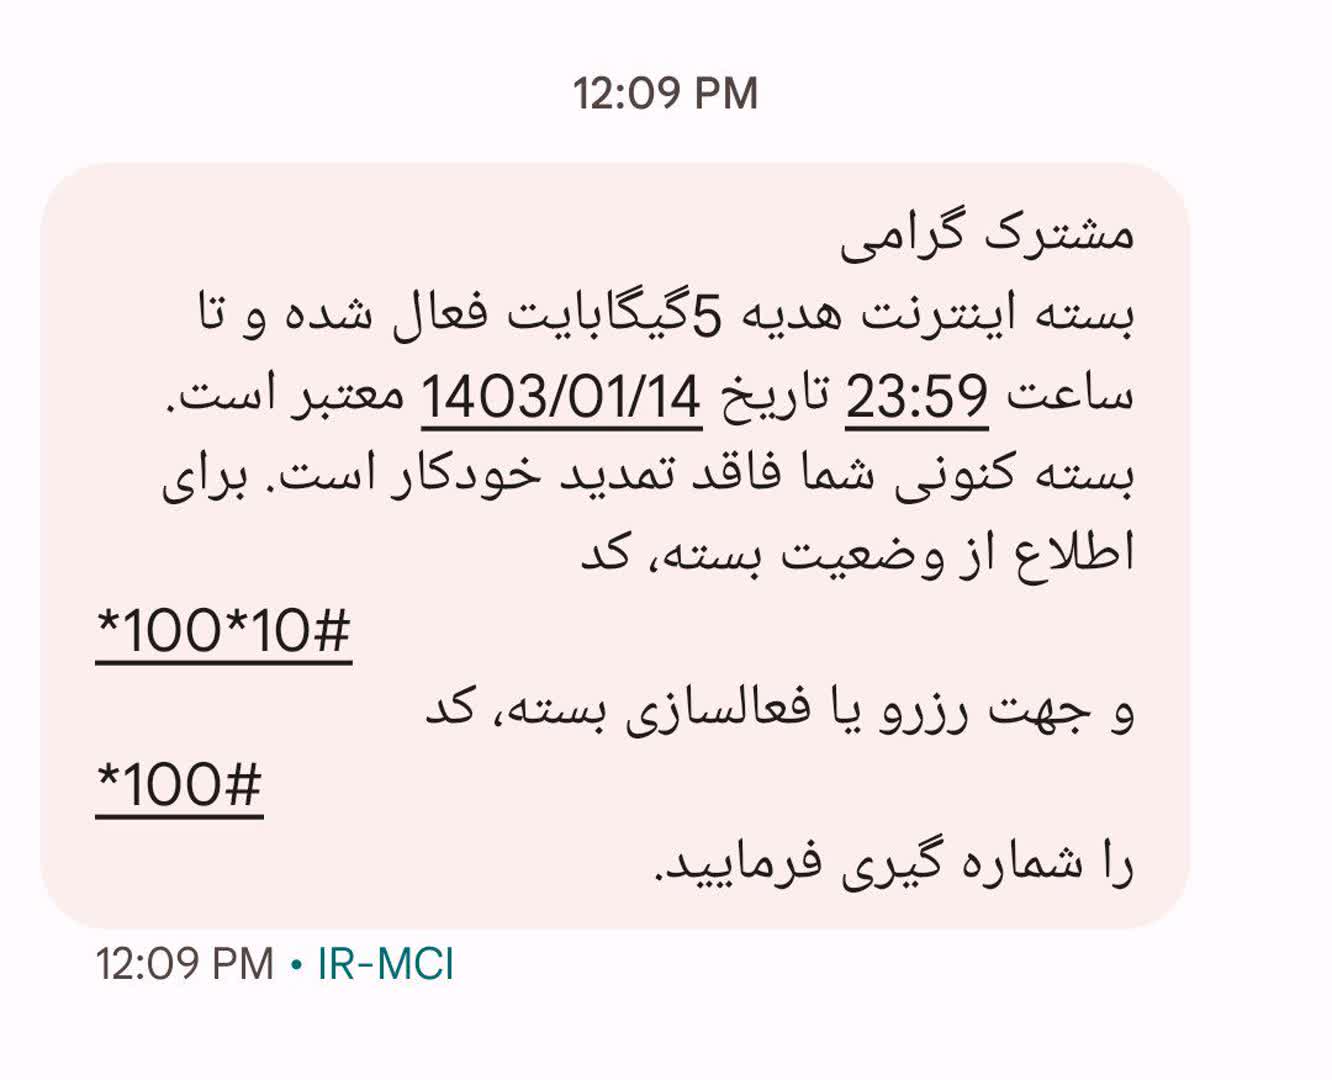 متن پیامک شده اینترنت رایگان هدیه دولت به همه ایرانی ها